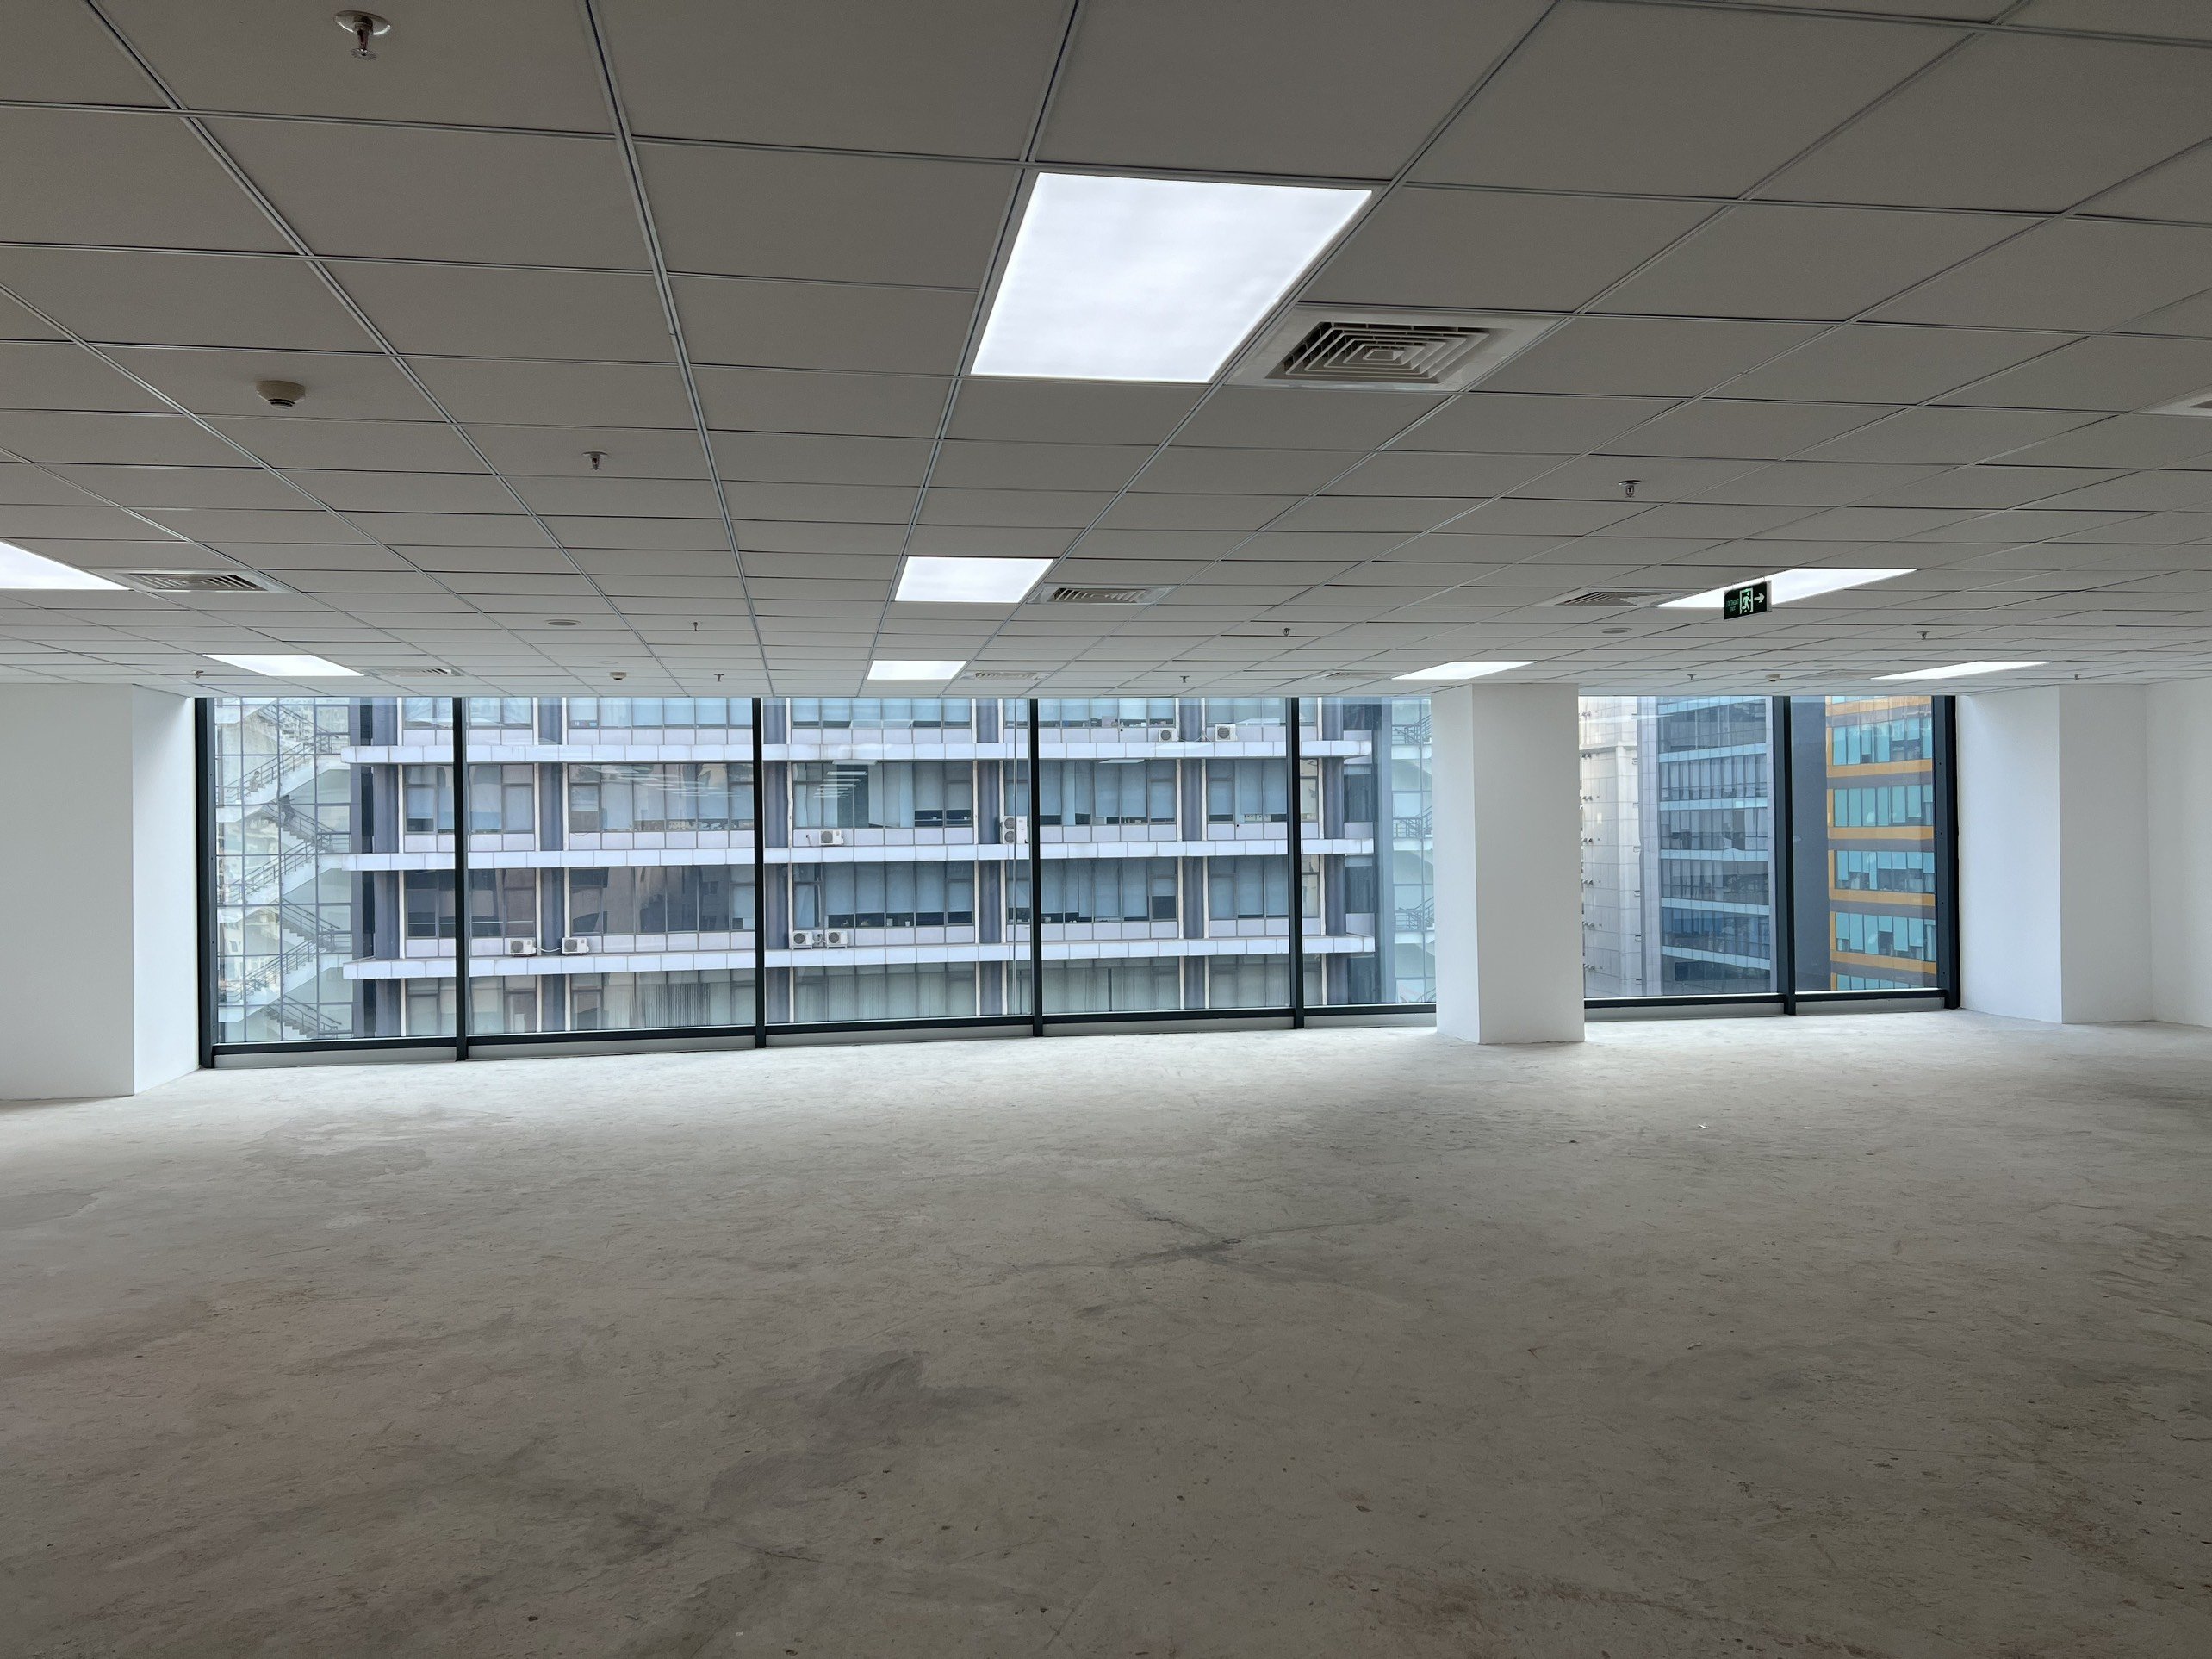 Tổ hợp The Nine quận Cầu Giấy trống 1700m2 sàn văn phòng cho thuê mới hoàn thiện nội thất cơ bản 1